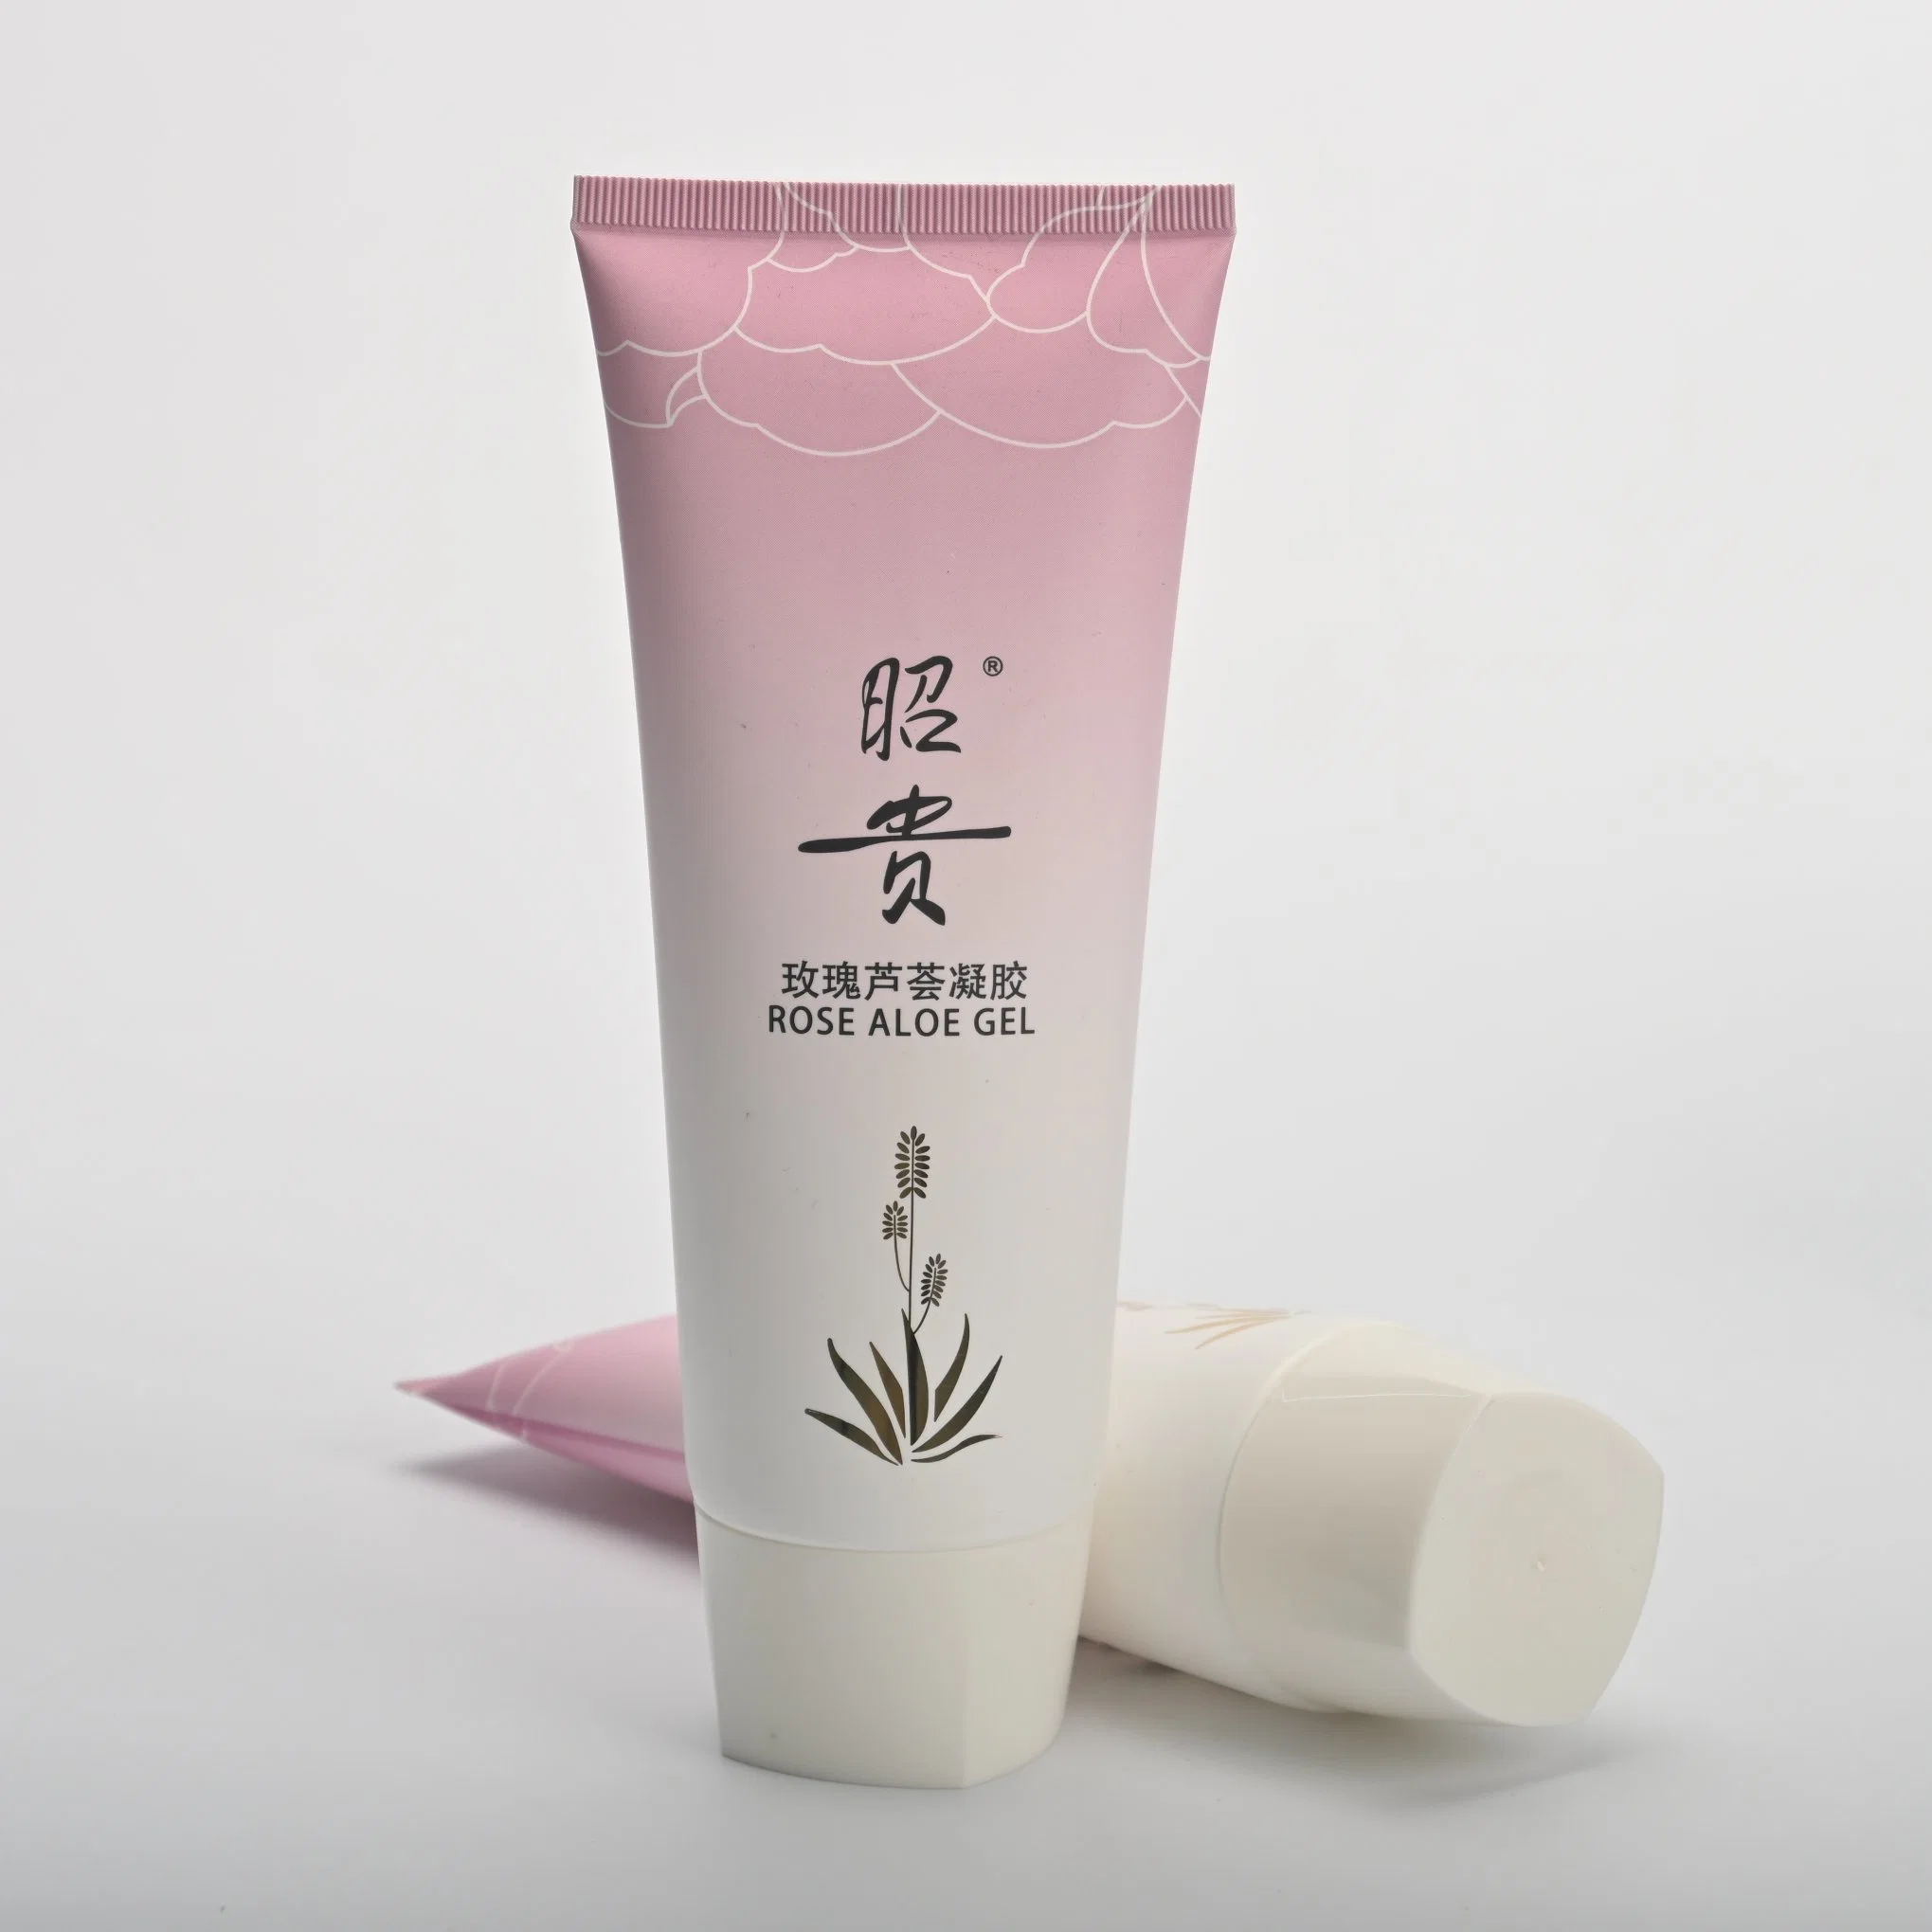 Plastik Squeeze Kosmetiktüten Verpackung mit Flip Top Cap Haut Pflege Creme Lotion Soft Squeeze Plastikschlauch